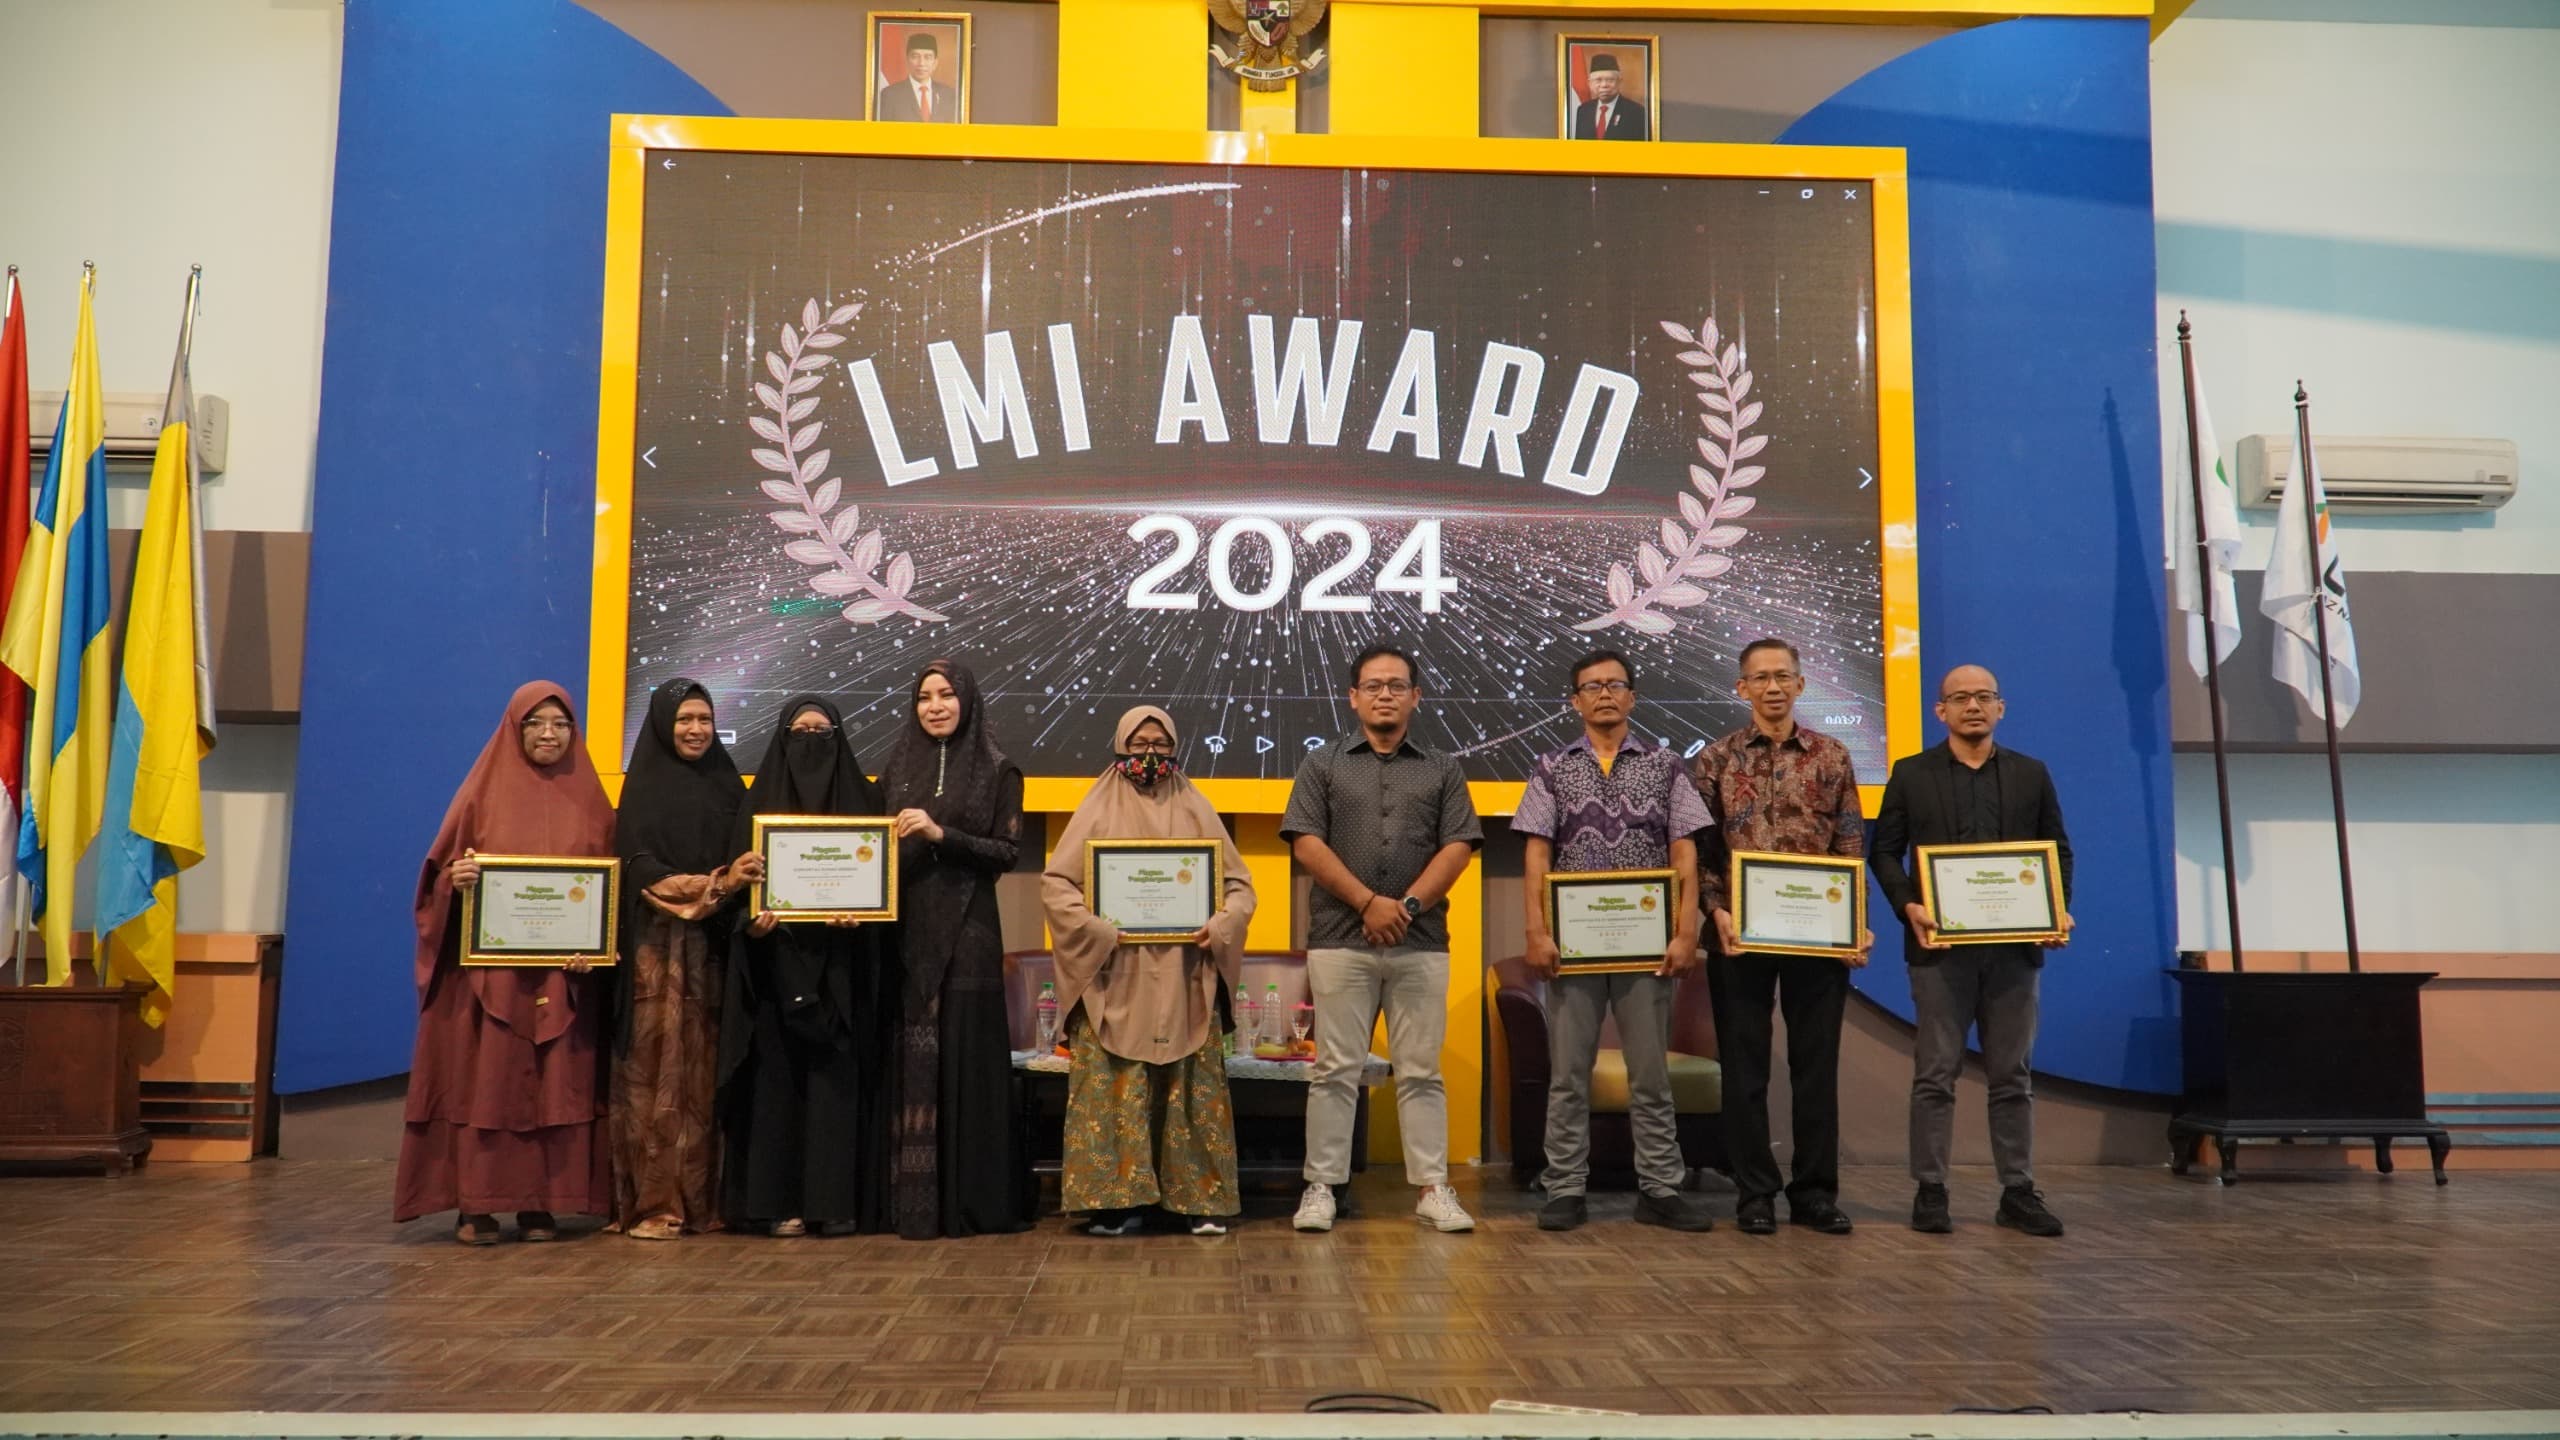 Pemberian penghargaan LMI kepada mitra dalam acara awarding LMI 2024, pada Sabtu (3/3/2024). Foto: LMI